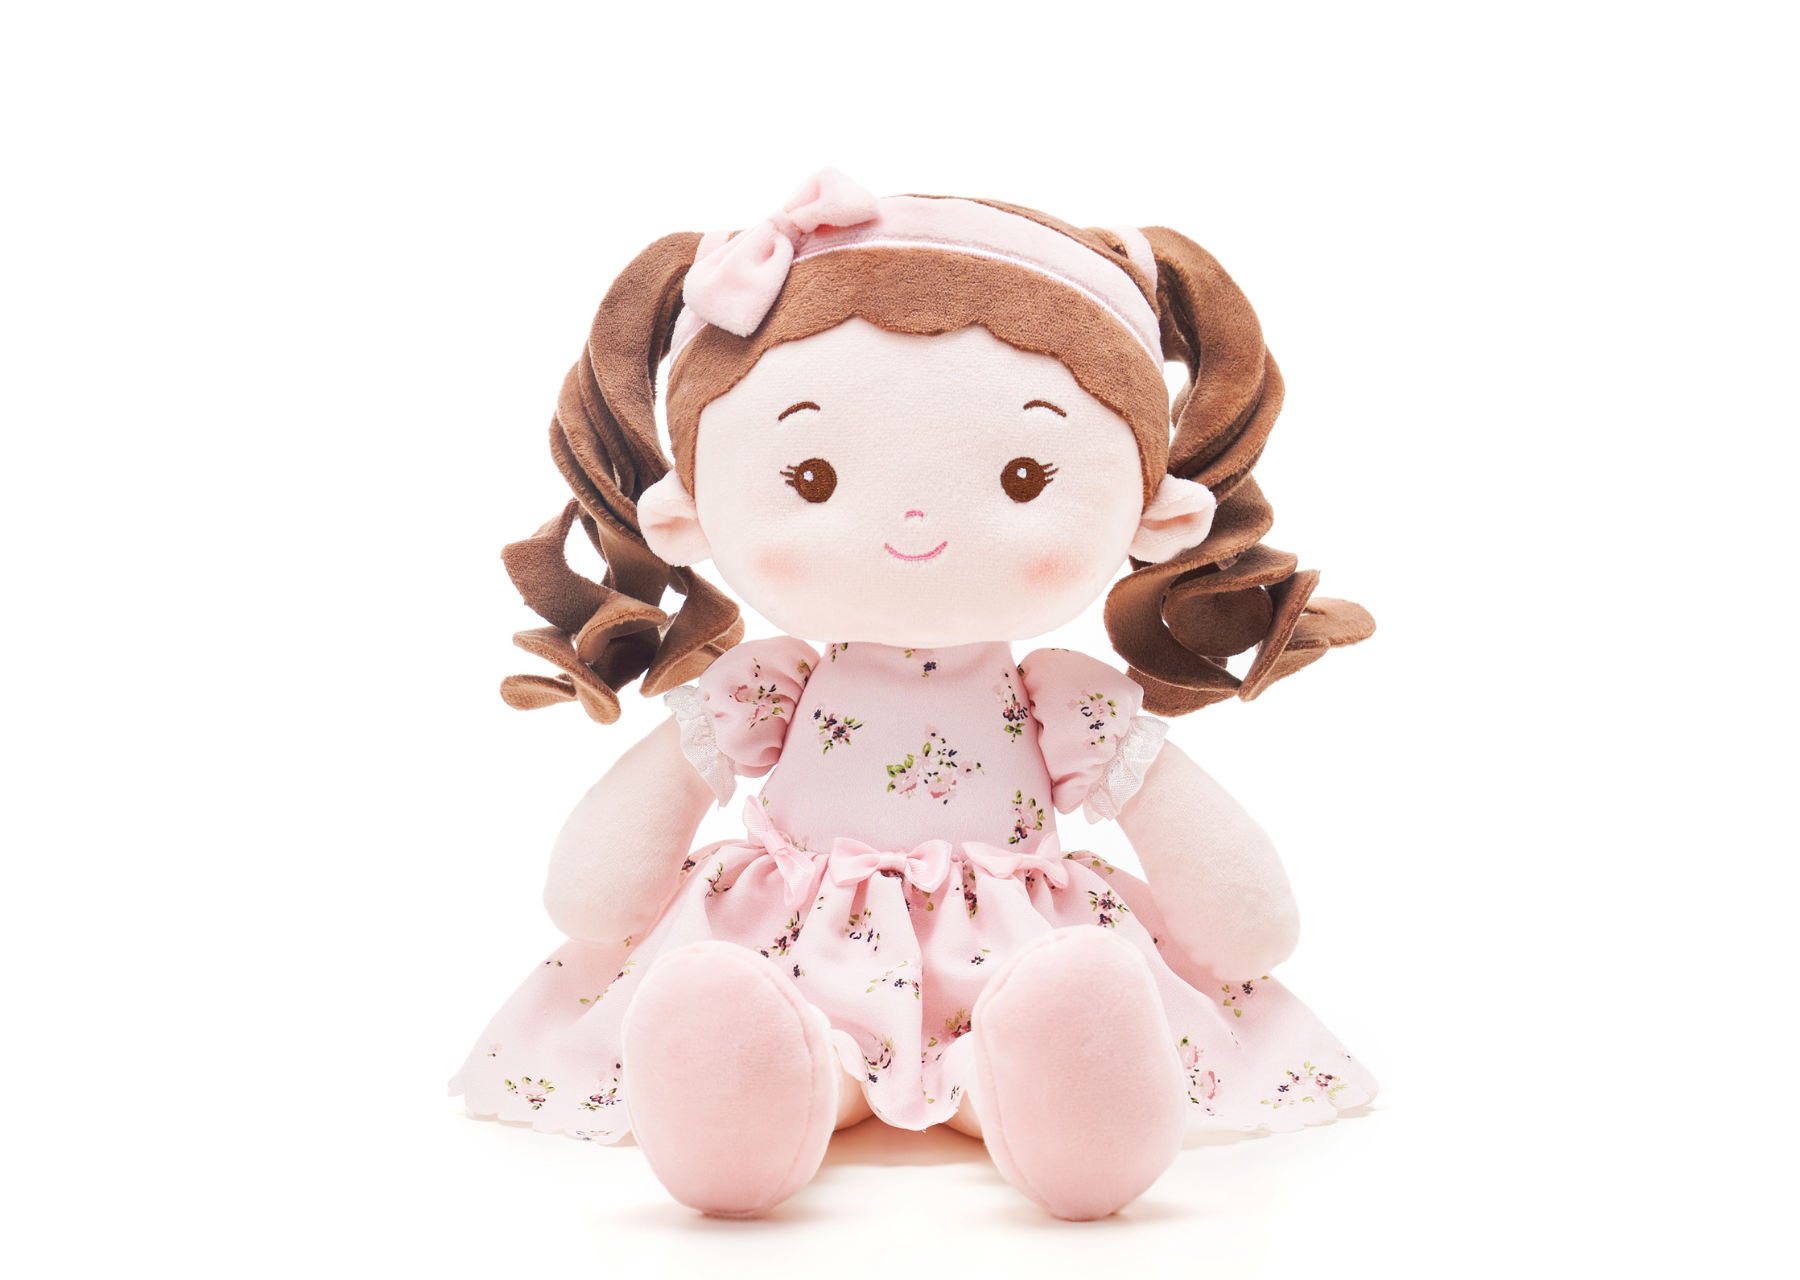 Leyadoll Soft Plush Personalized Leya Doll, My First Baby Doll - Leya Doll